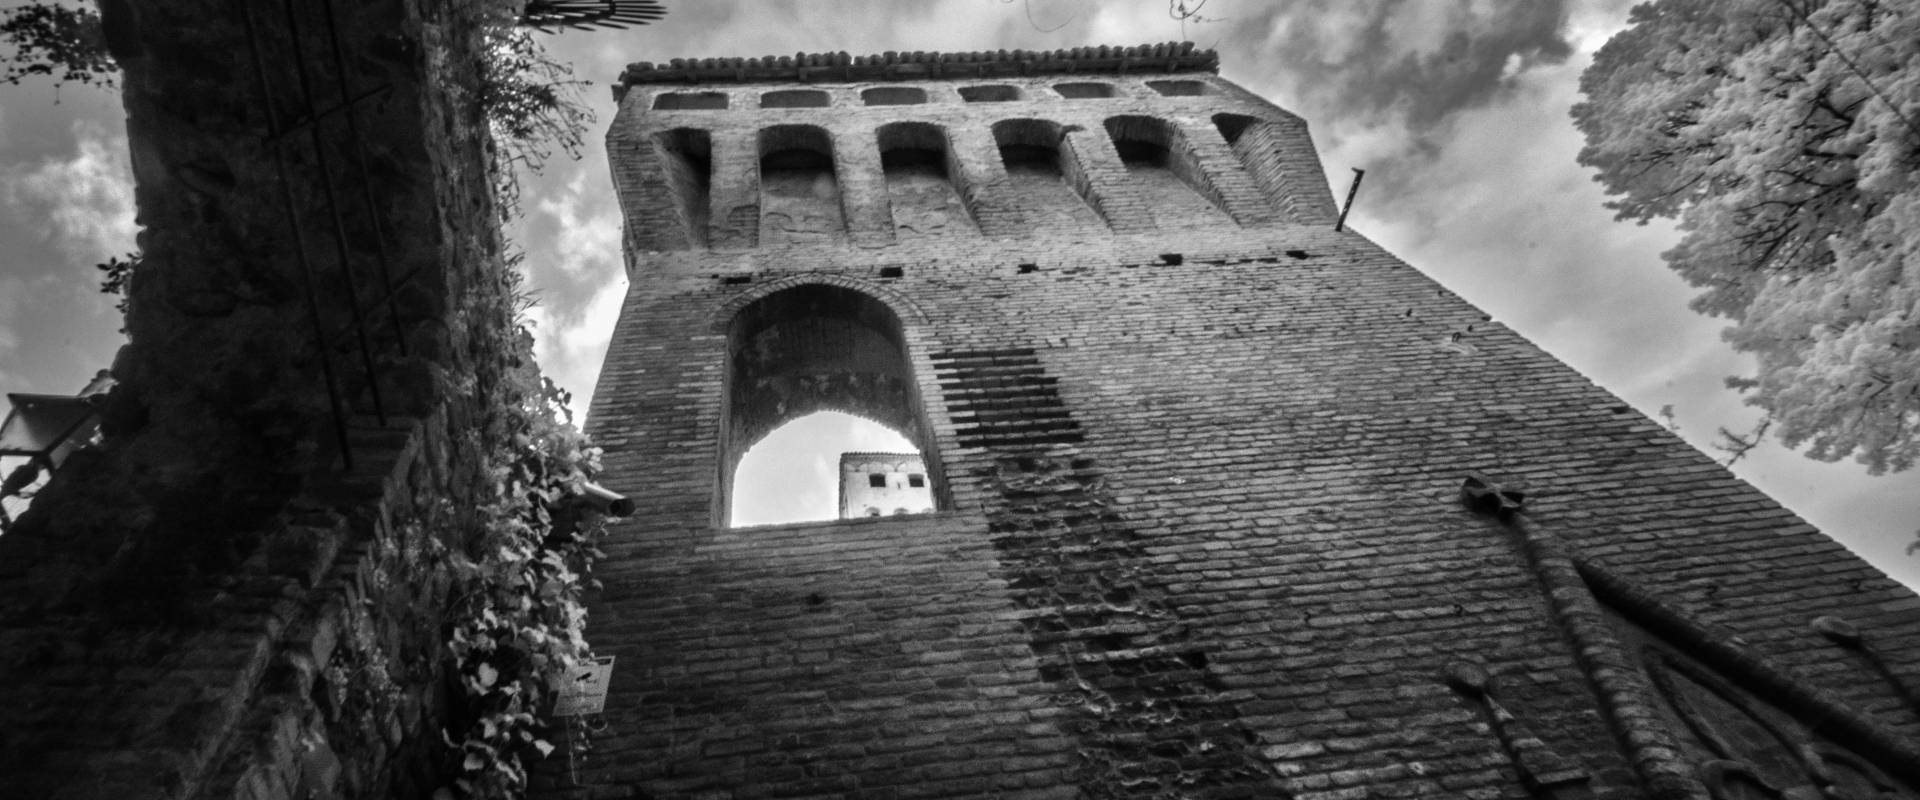 Dettaglio Rocca foto di Lara zanarini